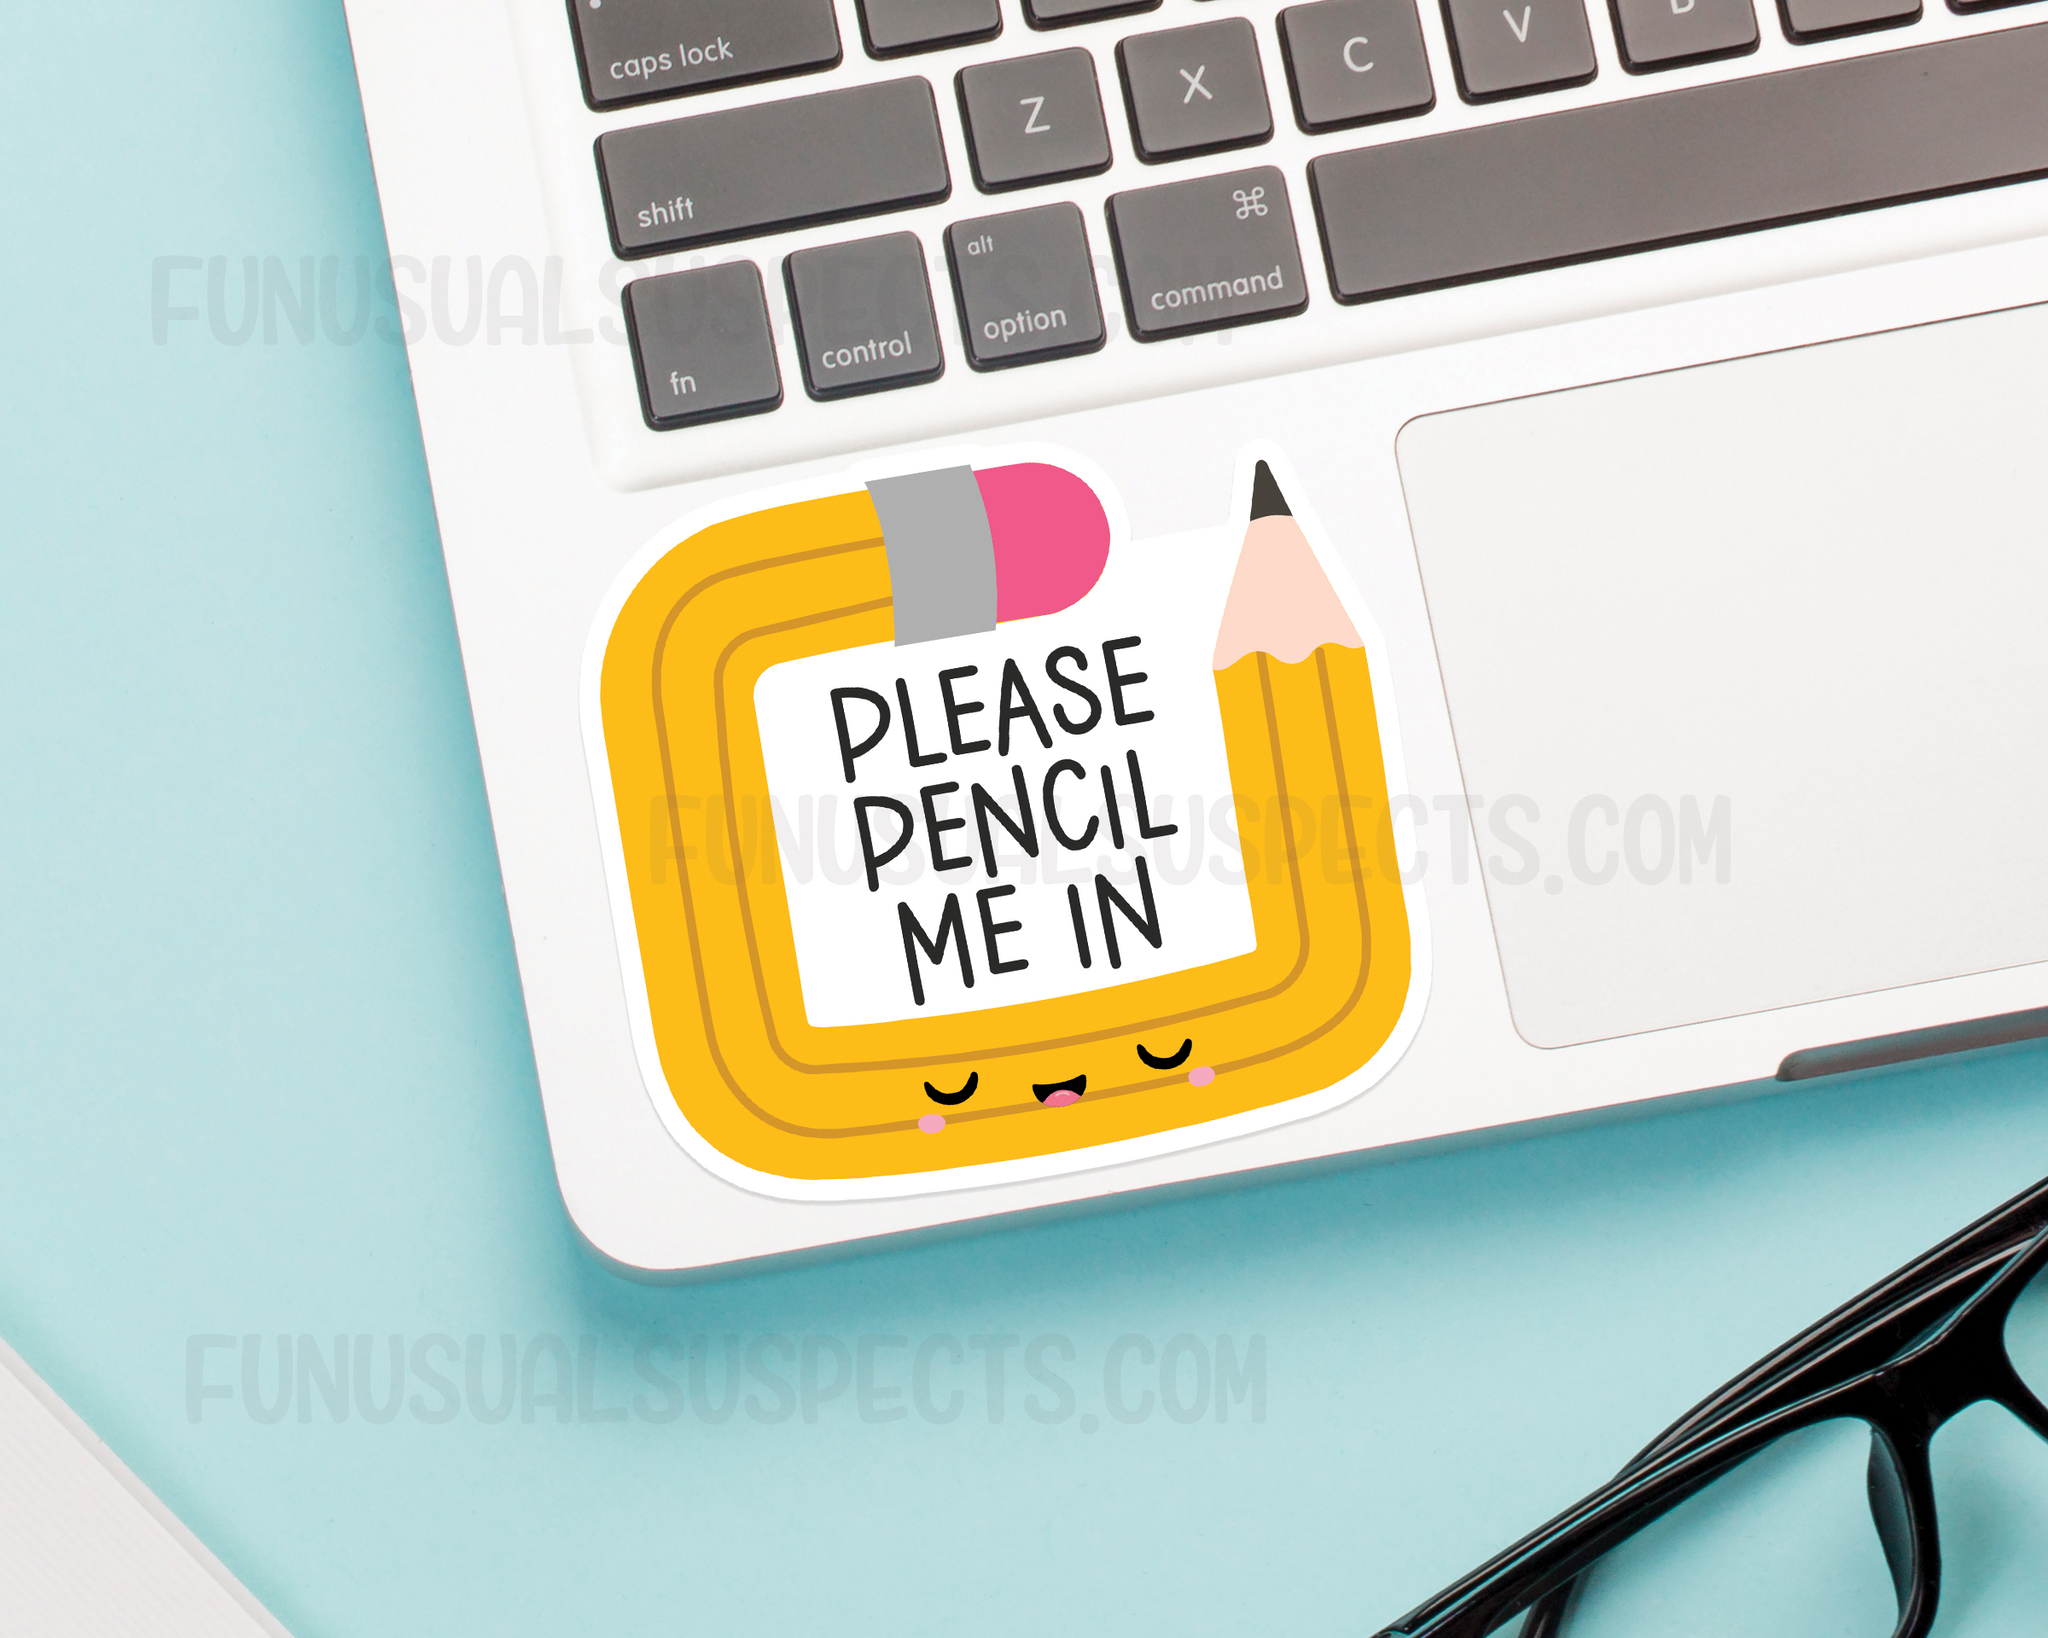 Pencil Me In Sticker